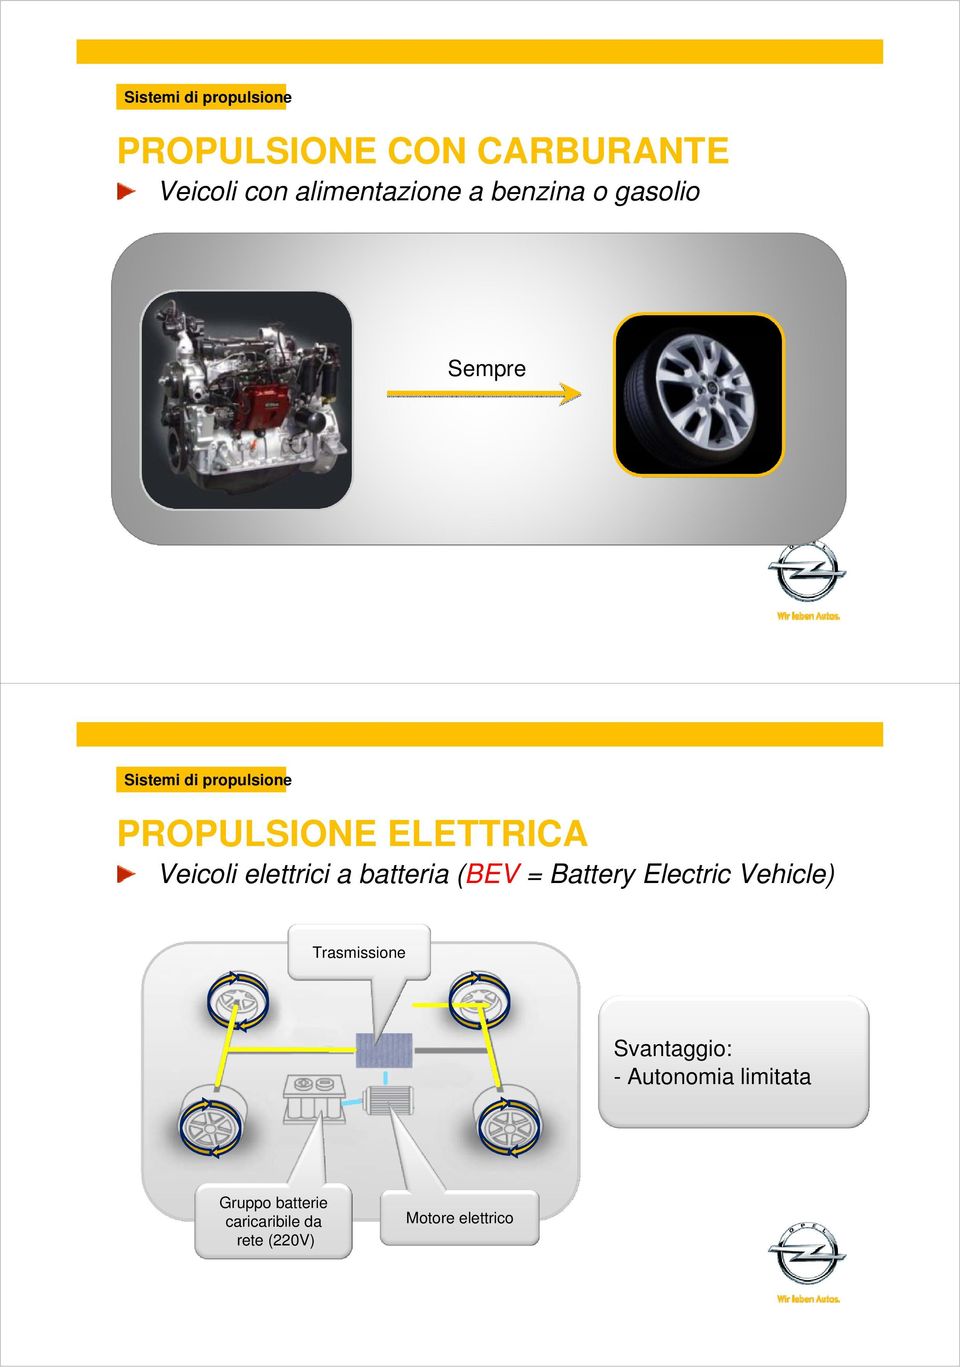 elettrici a batteria (BEV = Battery Electric Vehicle) Trasmissione Svantaggio: